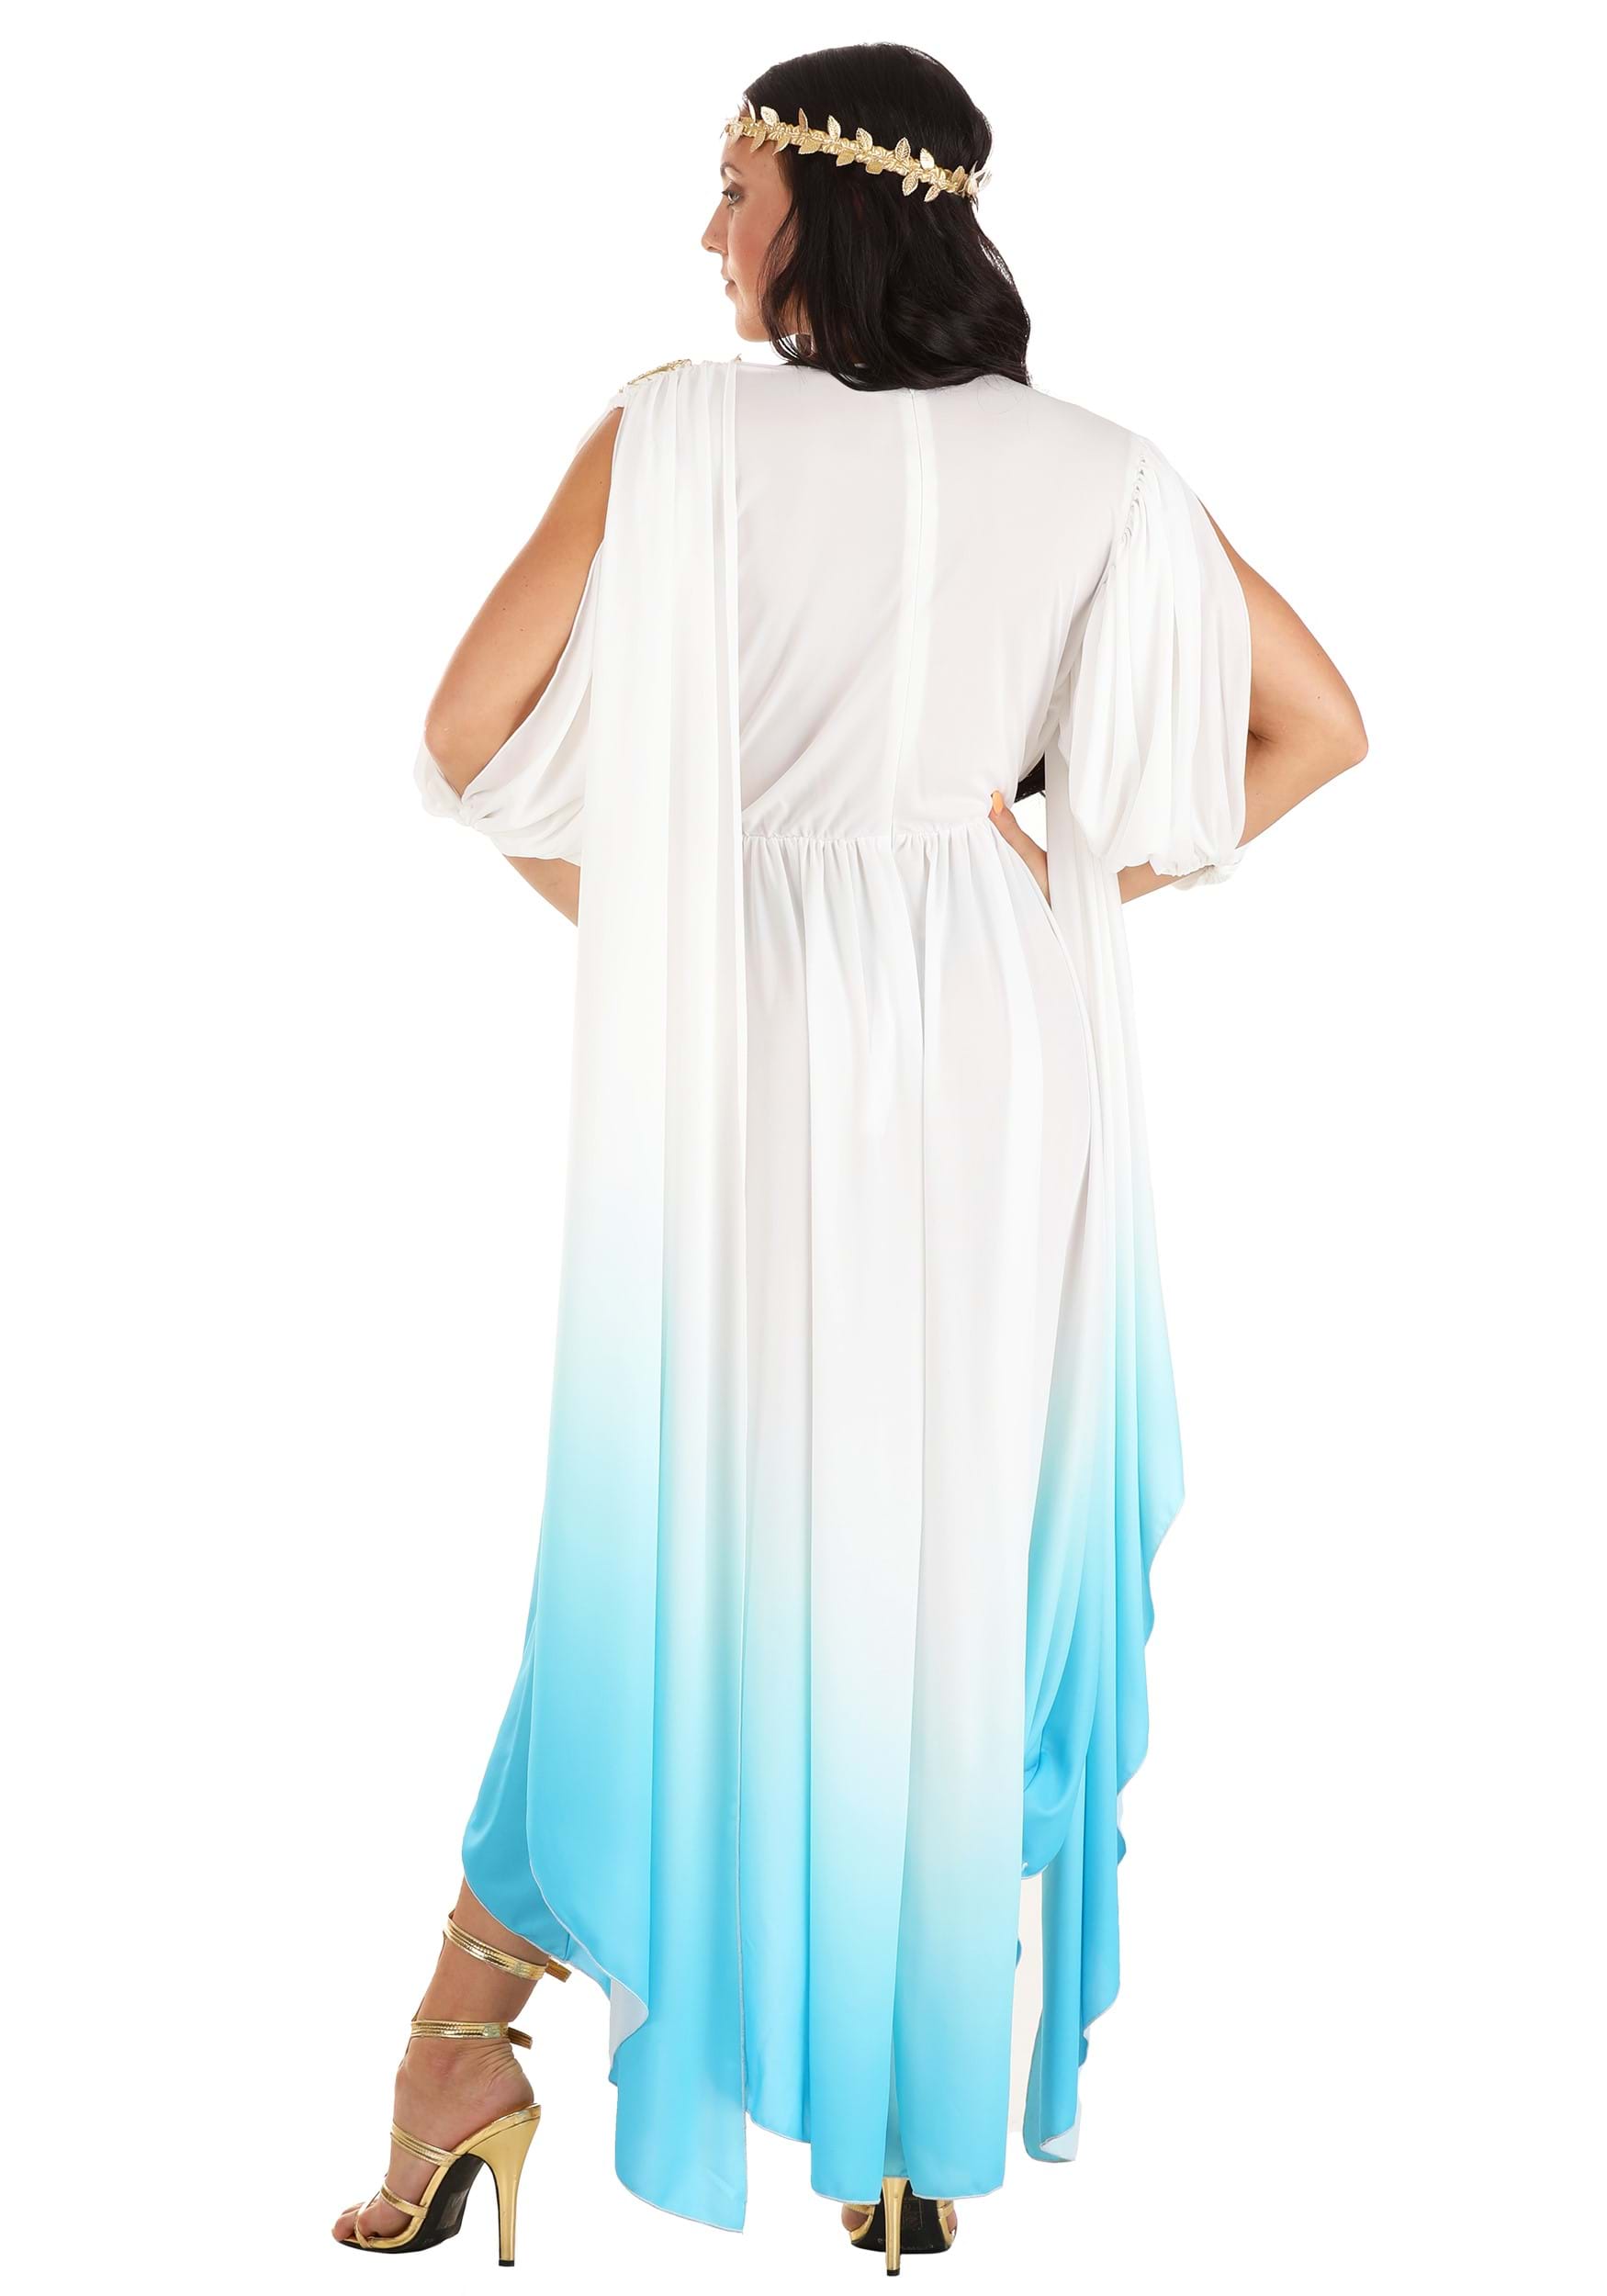 Deluxe Goddess Costume For Women , Greek Goddess Costumes